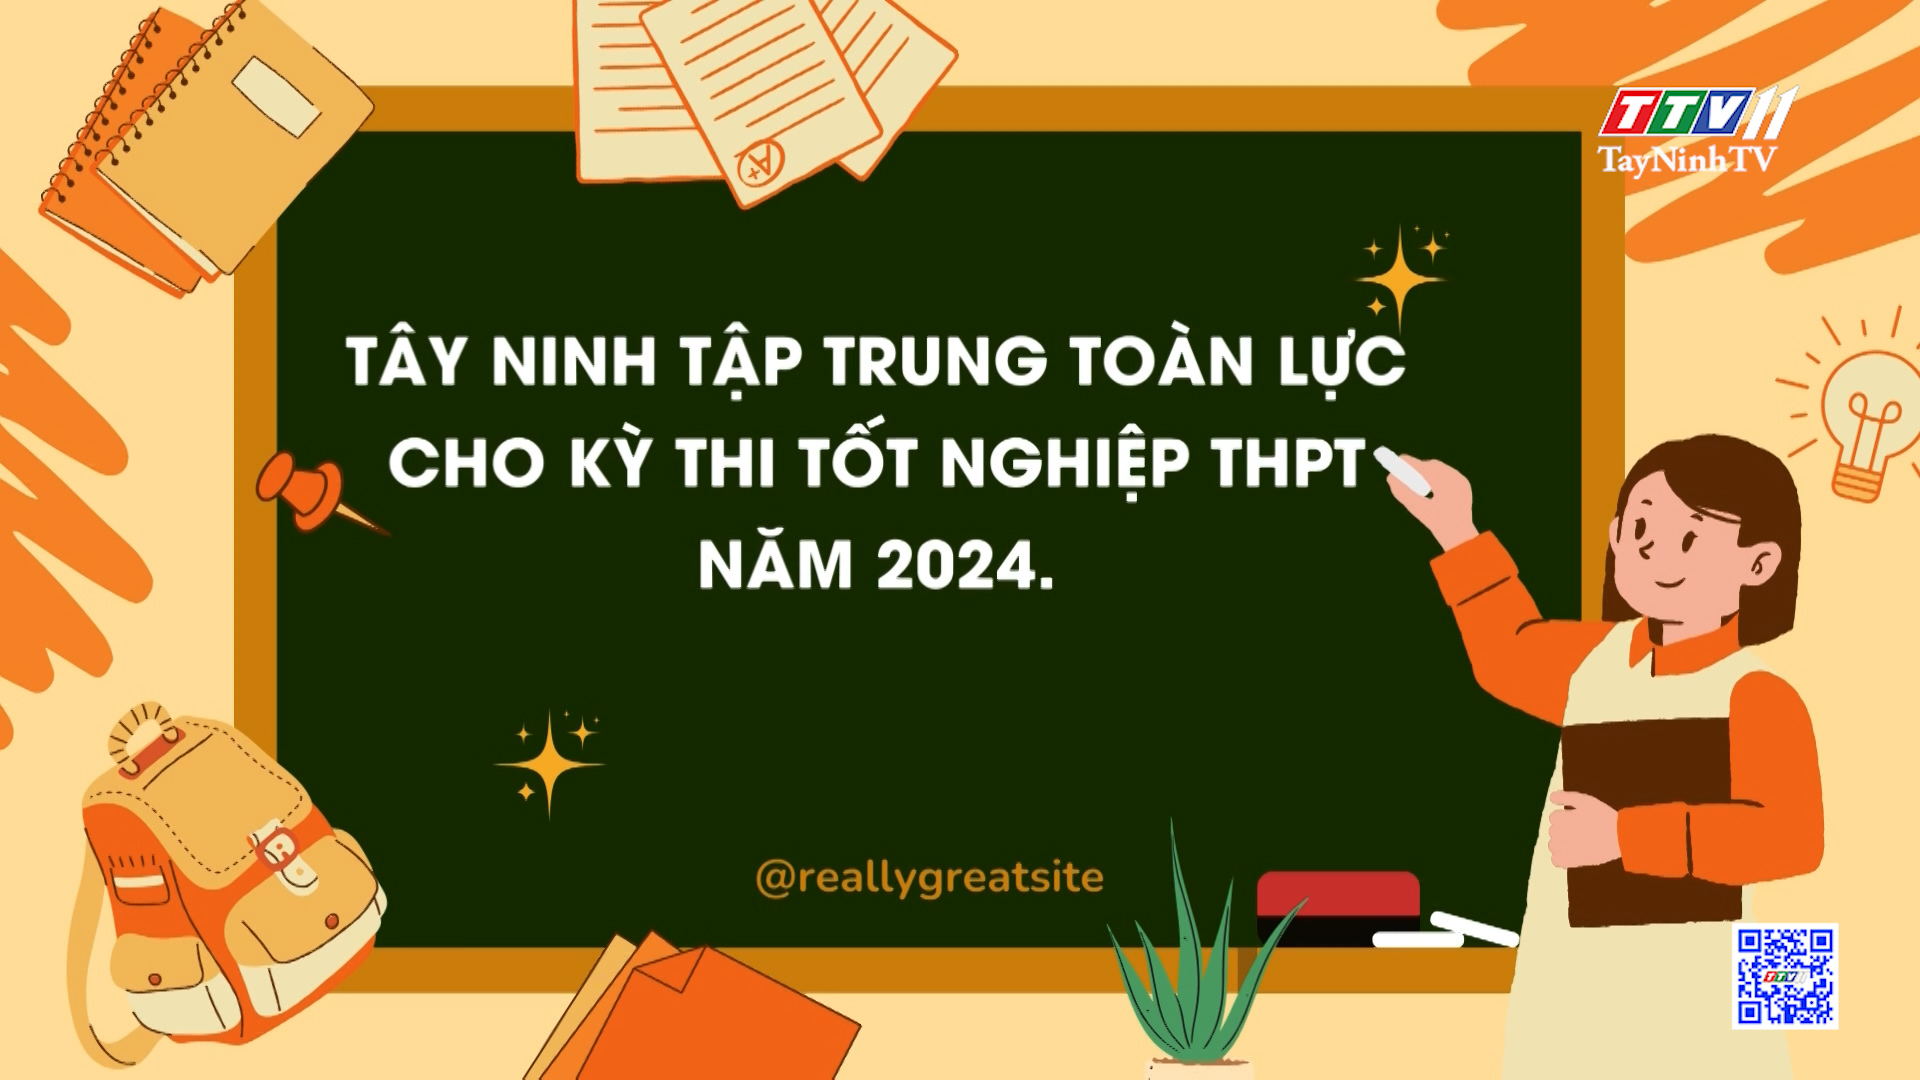 Tây Ninh tập trung toàn lực cho kỳ thi tốt nghiệp THPT năm 2024 | GIÁO DỤC ĐÀO TẠO | TayNinhTV